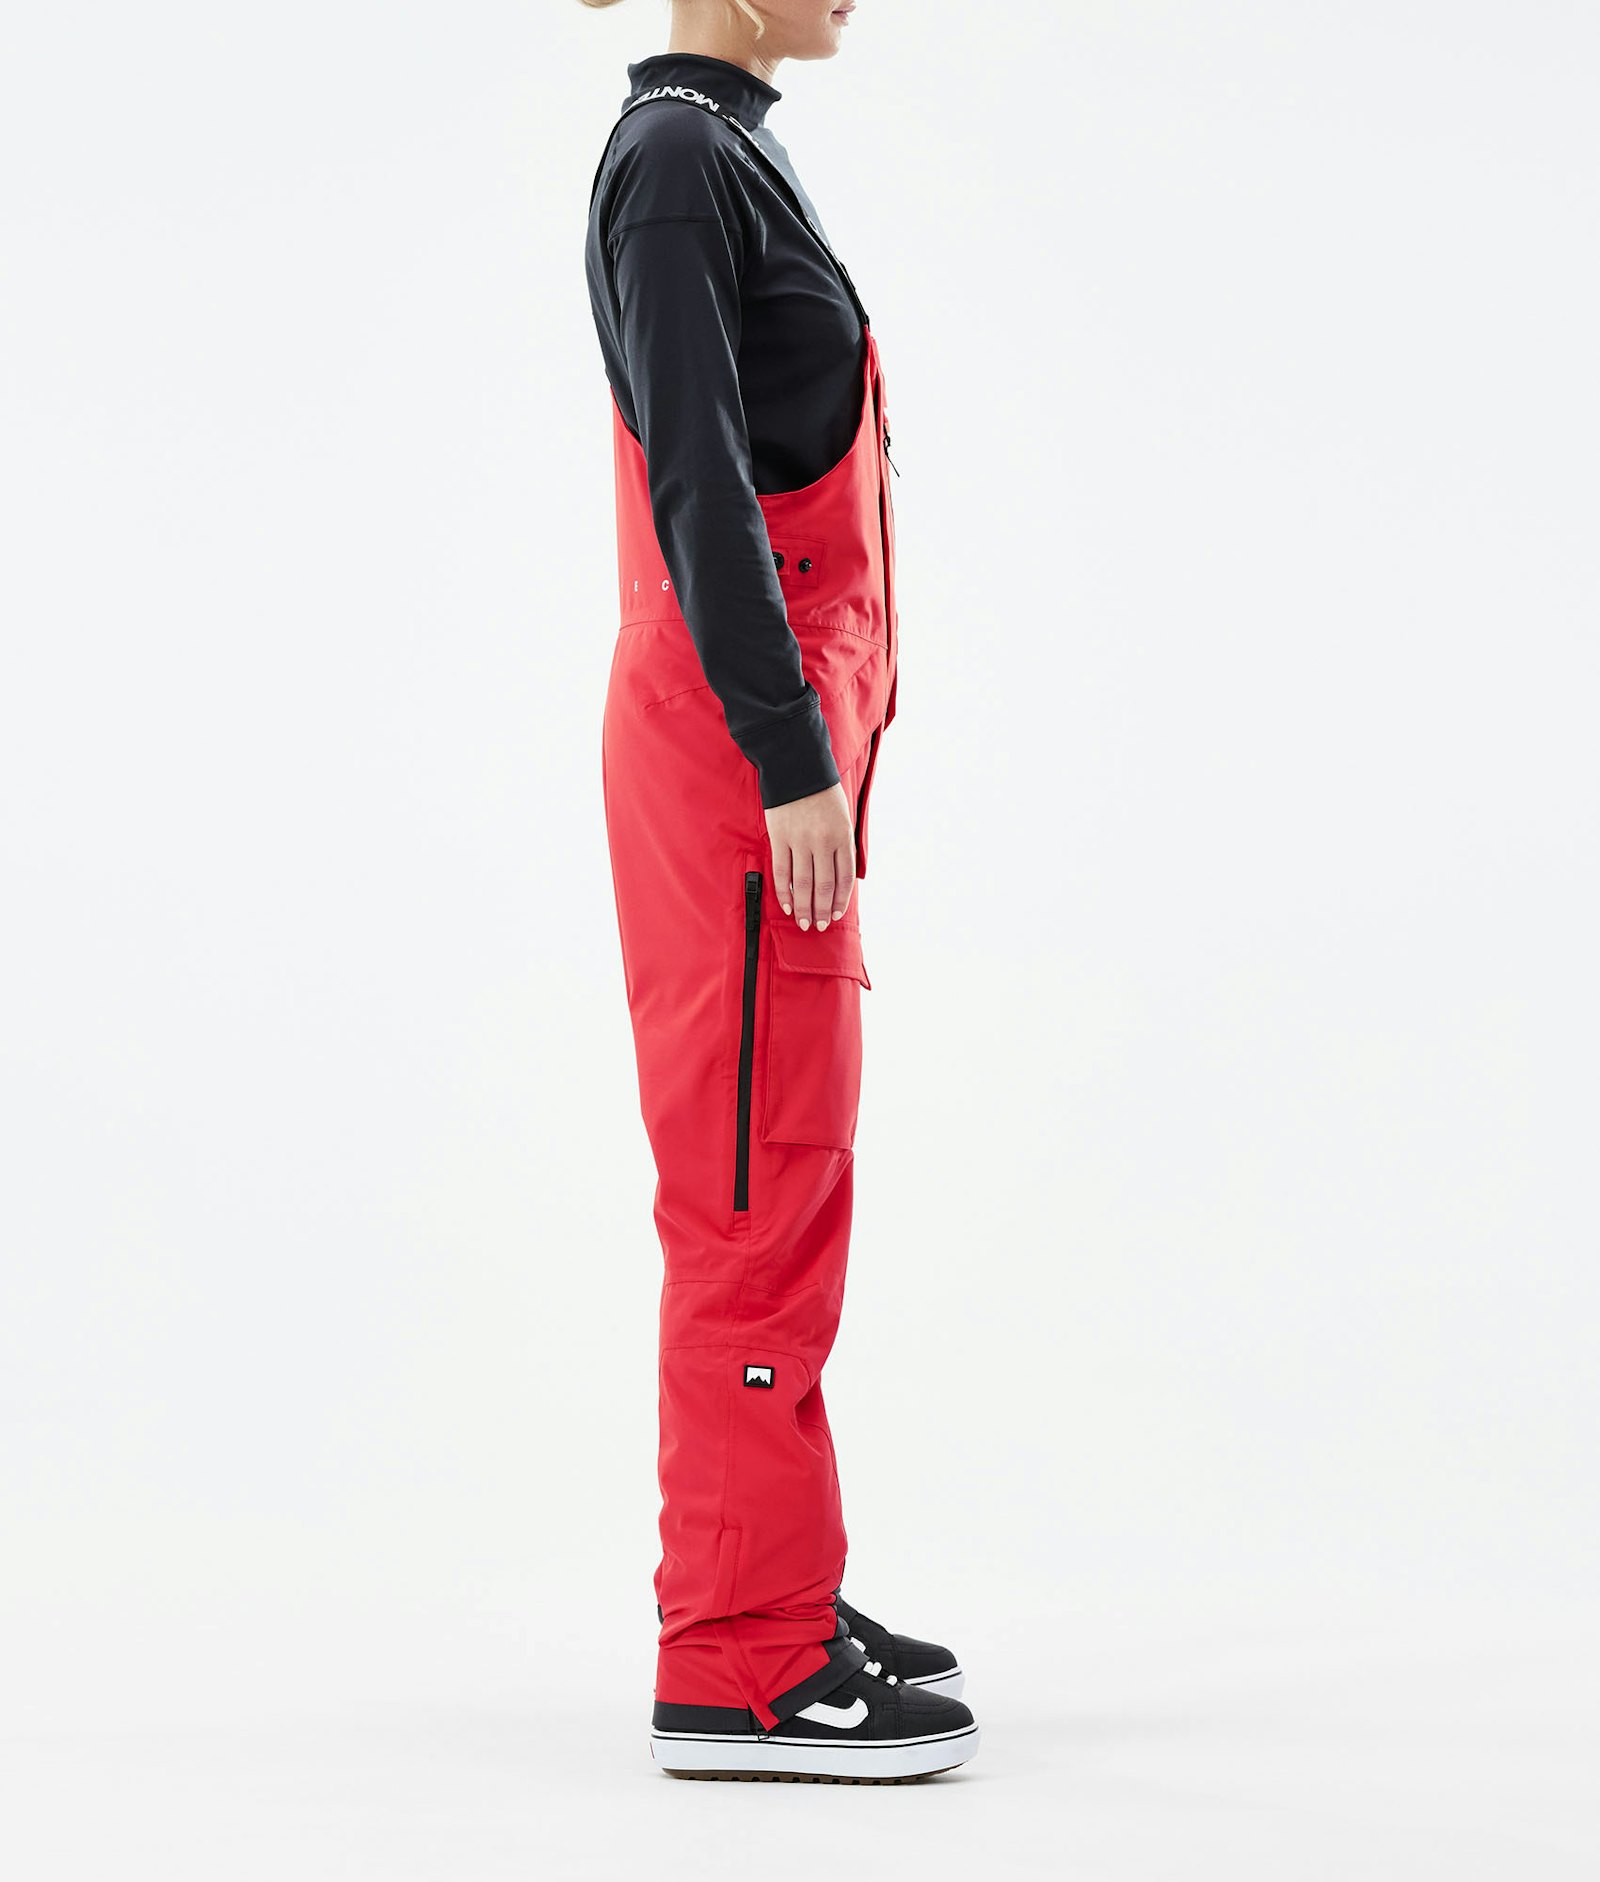 Fawk W 2021 Pantalones Snowboard Mujer Red Renewed, Imagen 2 de 6